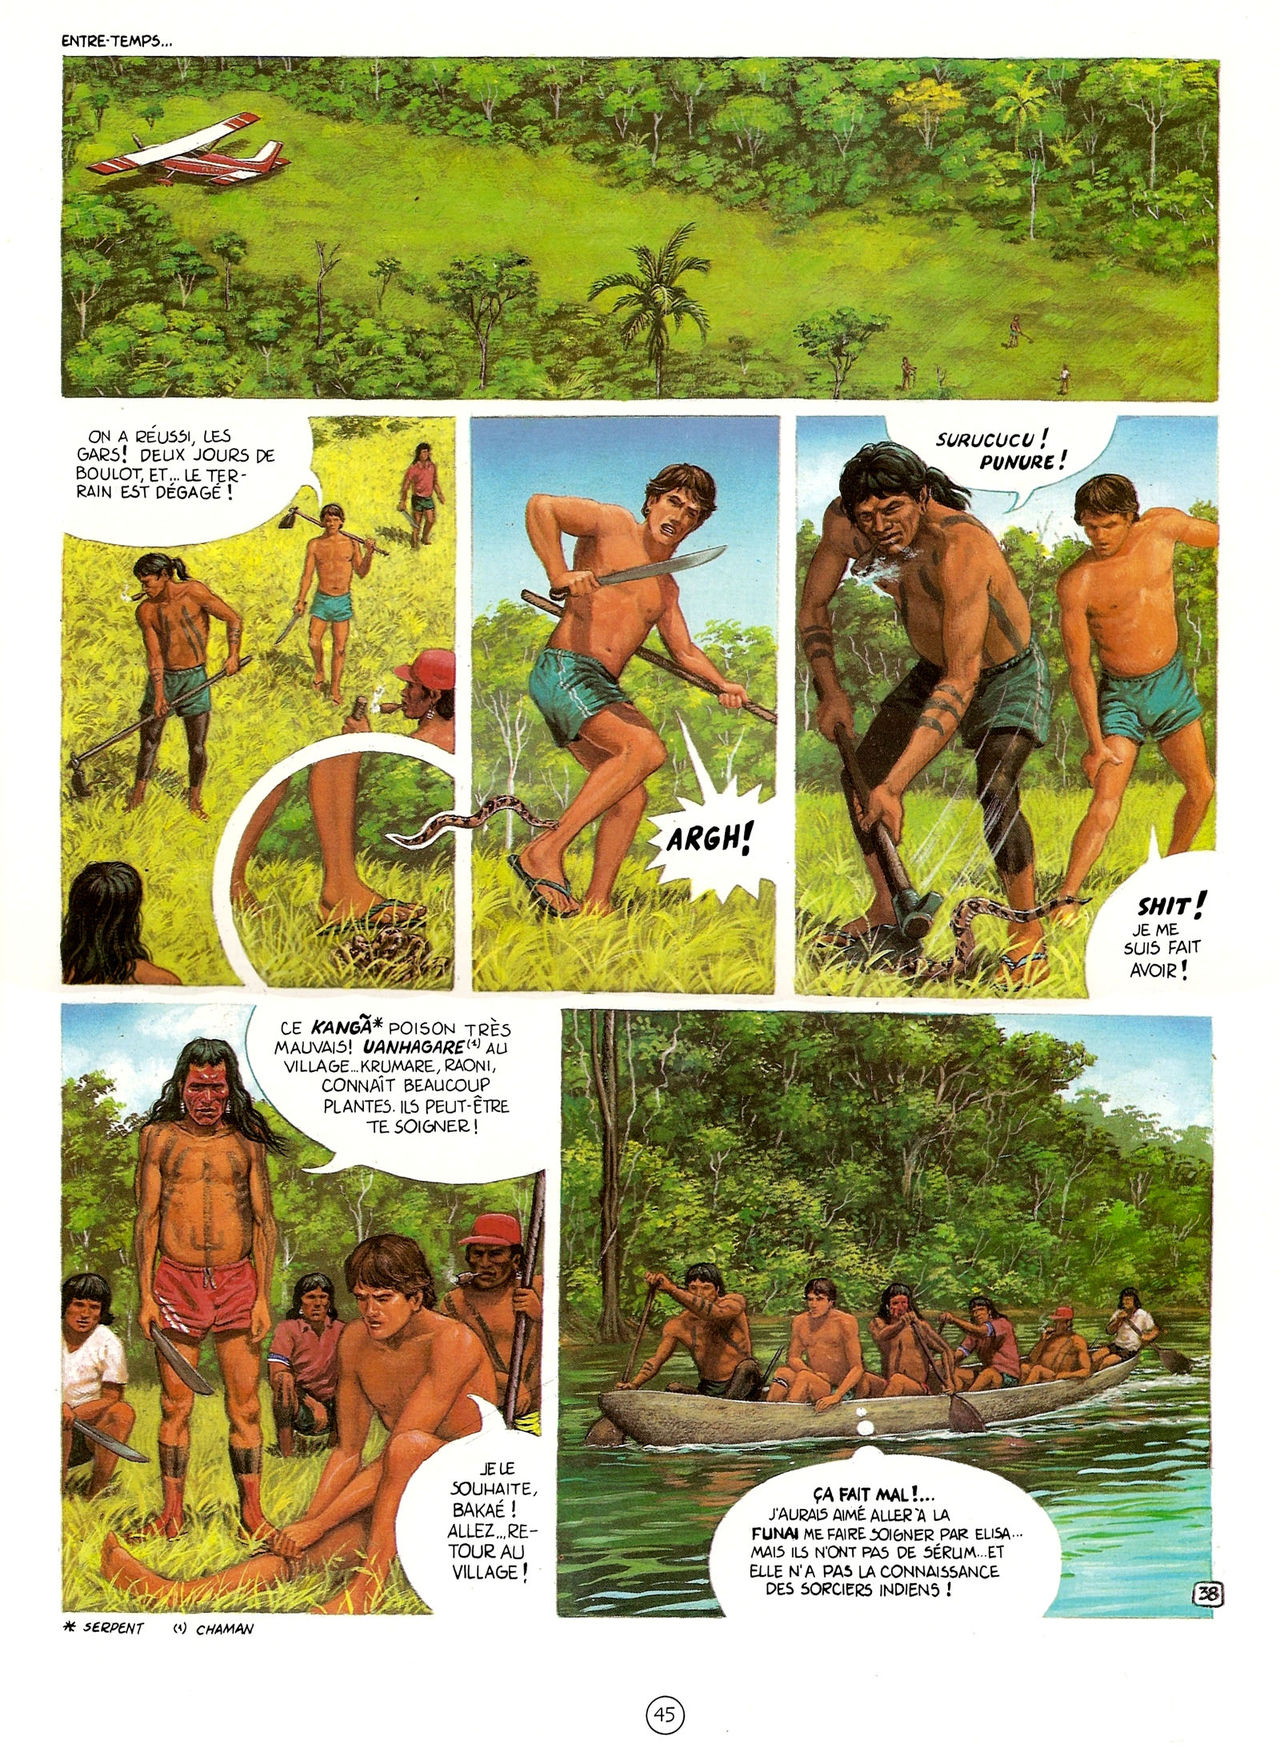 Les Aventures de Vic Voyage 05 - Brazil! numero d'image 45